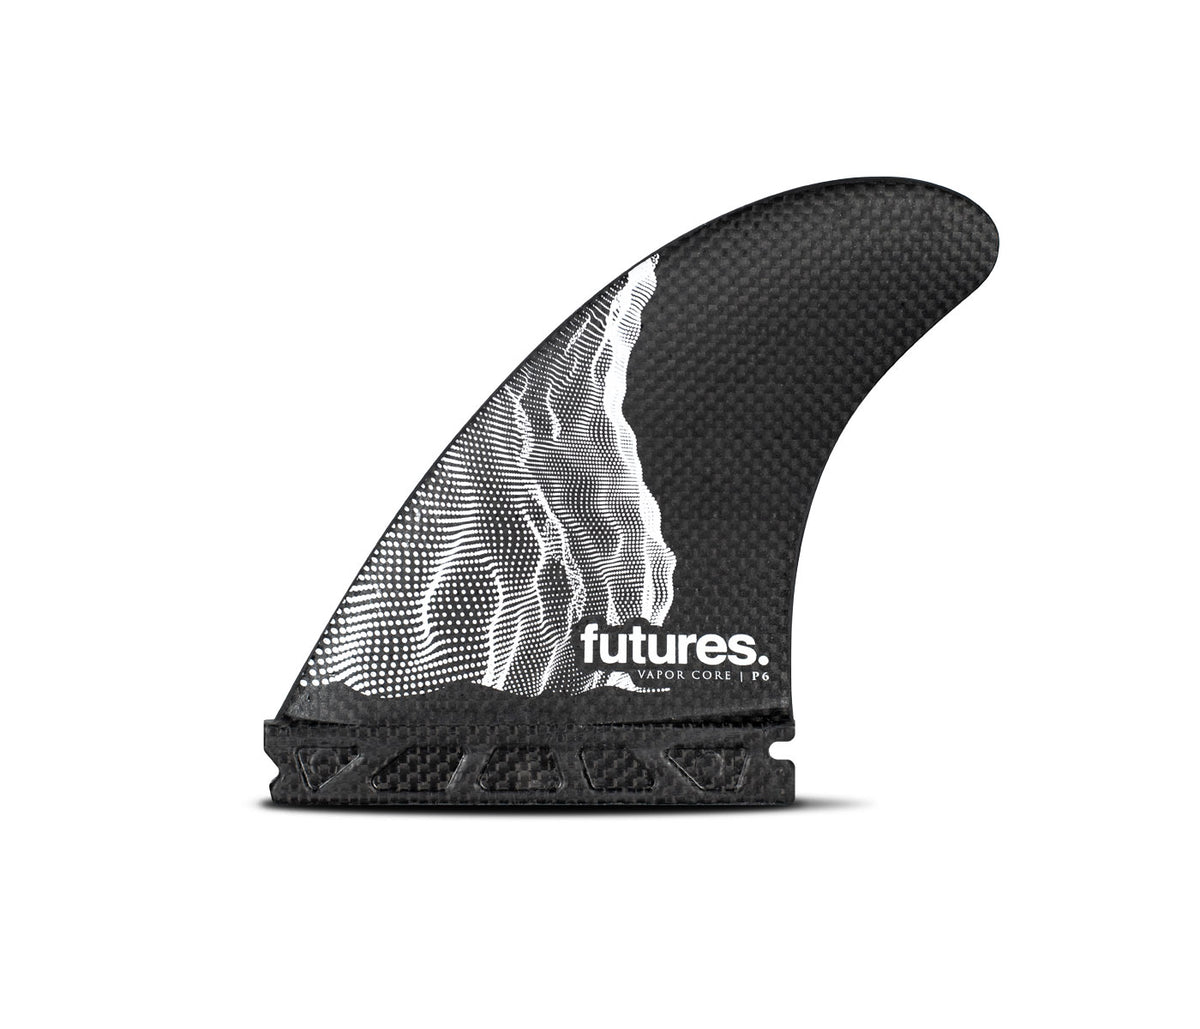 Vapor Core | P6 – Futures Fins US